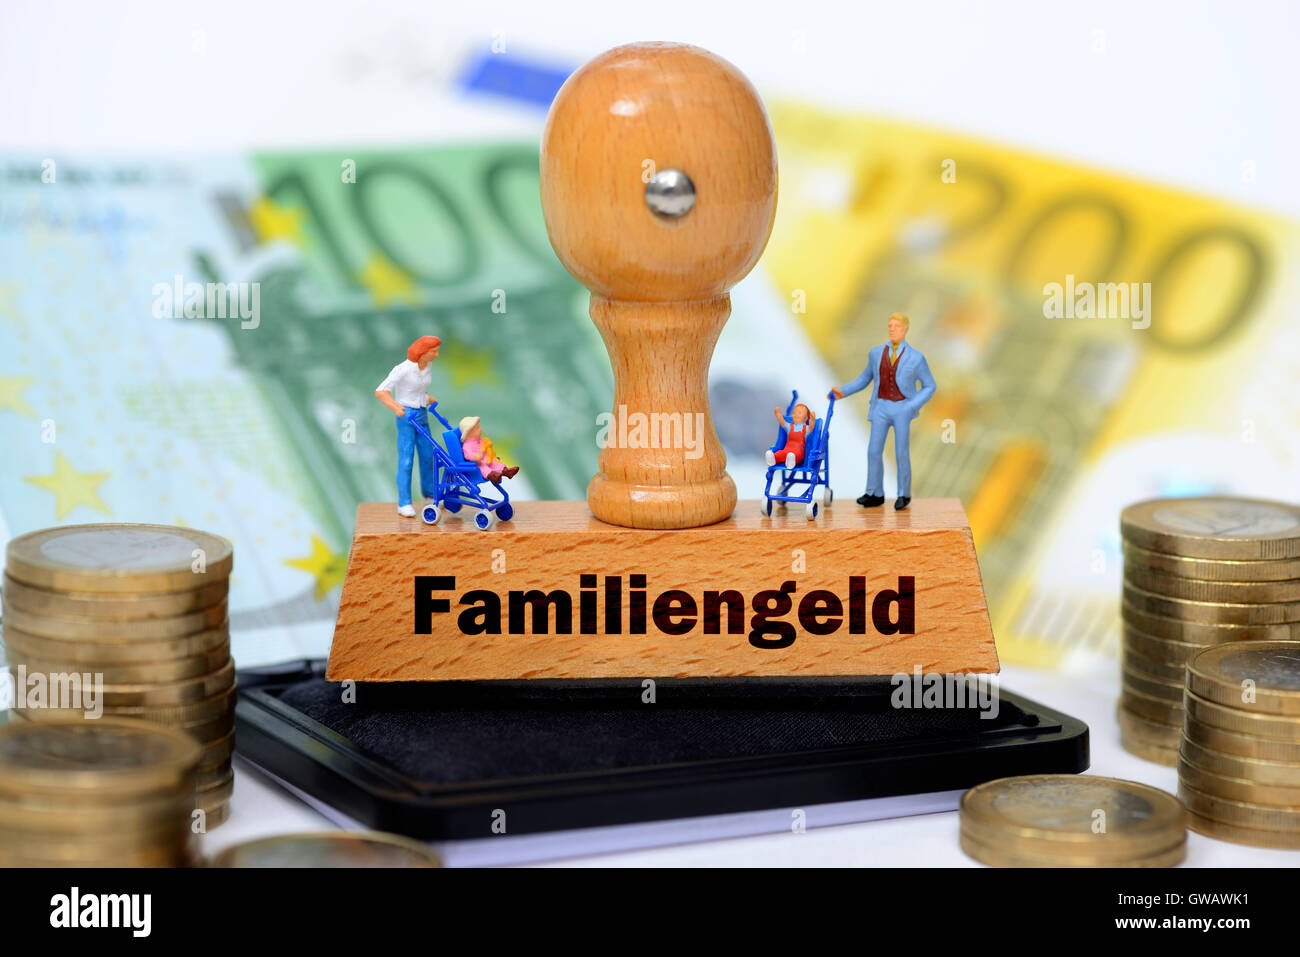 Miniatur-Figuren auf einer Briefmarke mit dem Label Familie Geld, Miniaturfiguren Auf Einem Stempel Mit der Aufschrift Familiengeld Stockfoto